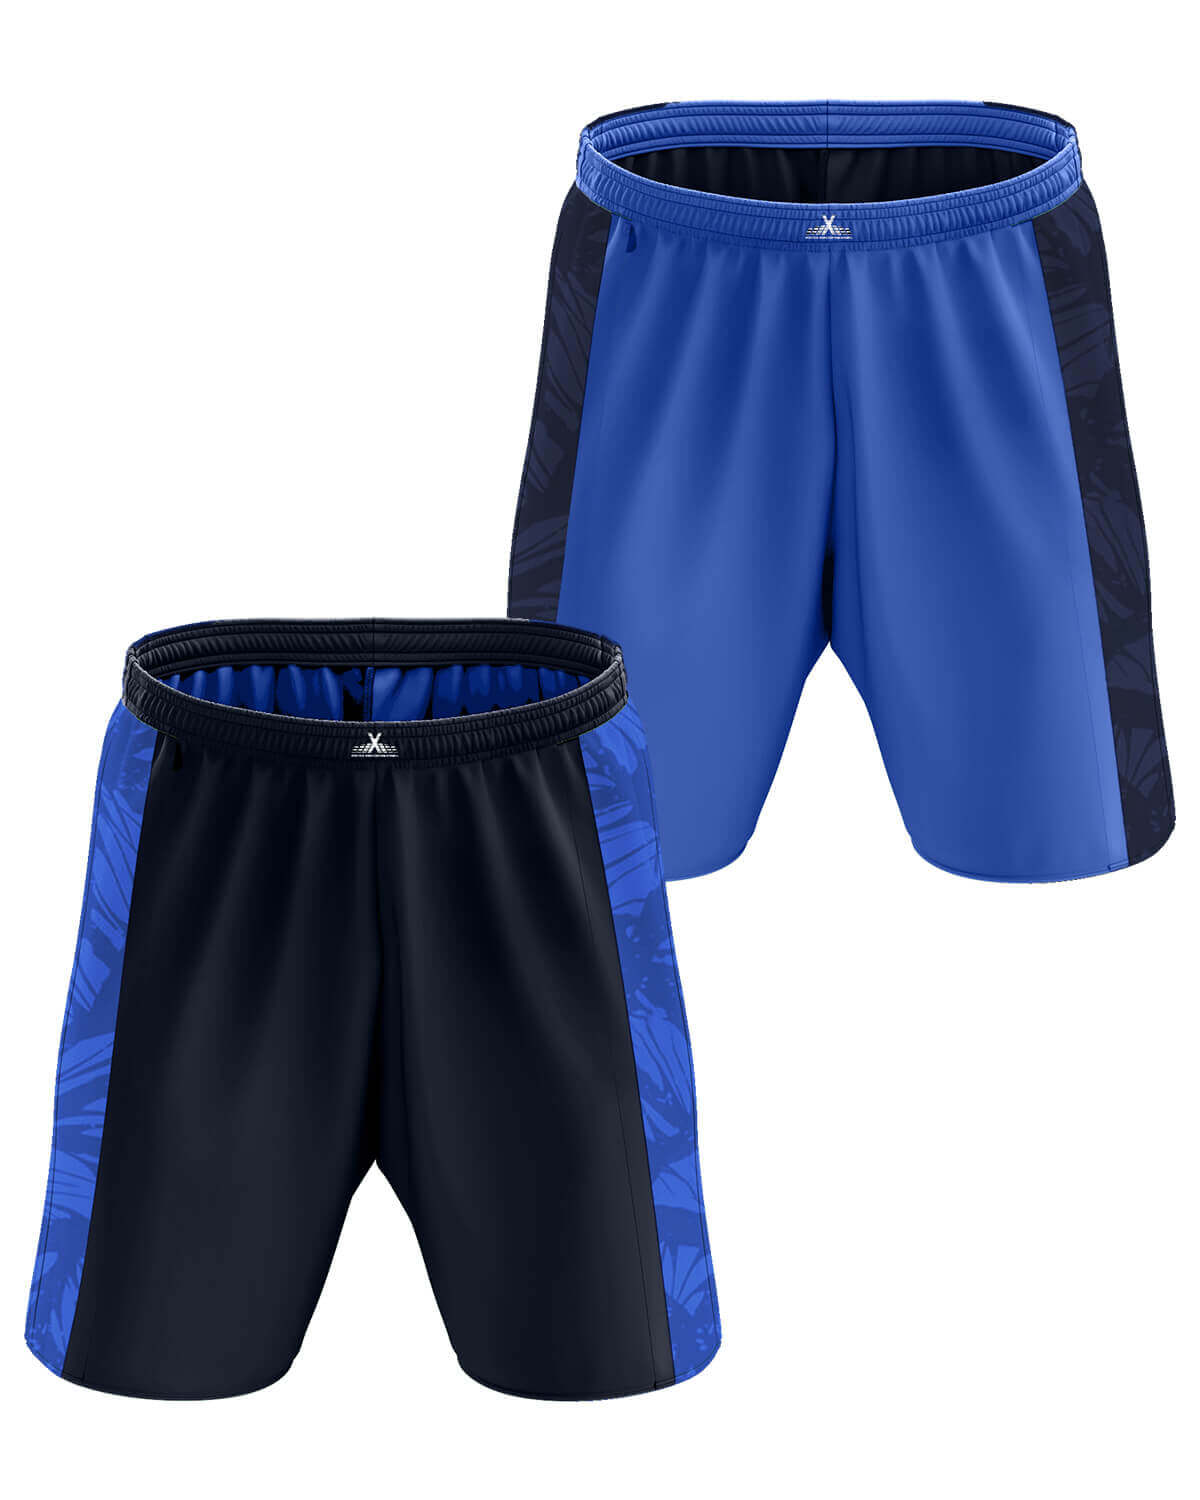 AthleisureX Full Custom Basketball Reversible Shorts - For Men